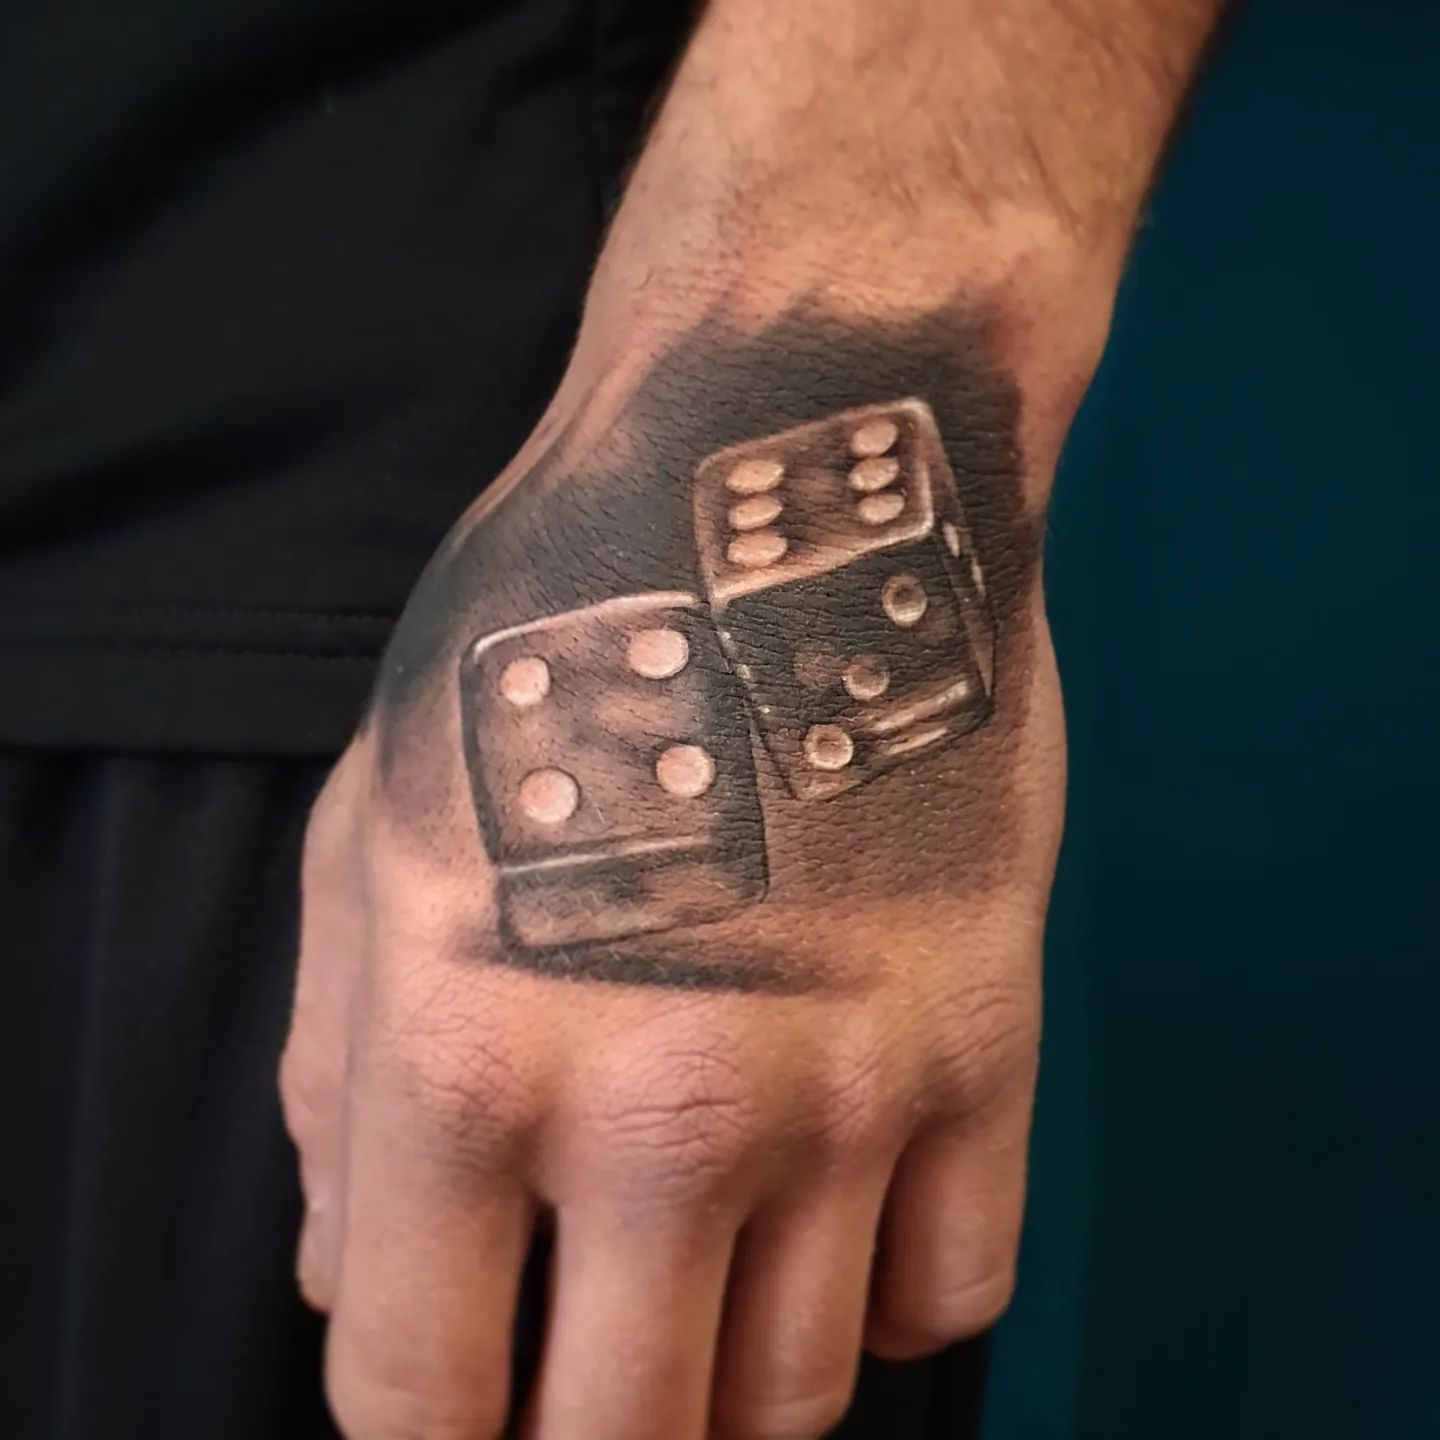 Tatuaje de dados en el brazo.